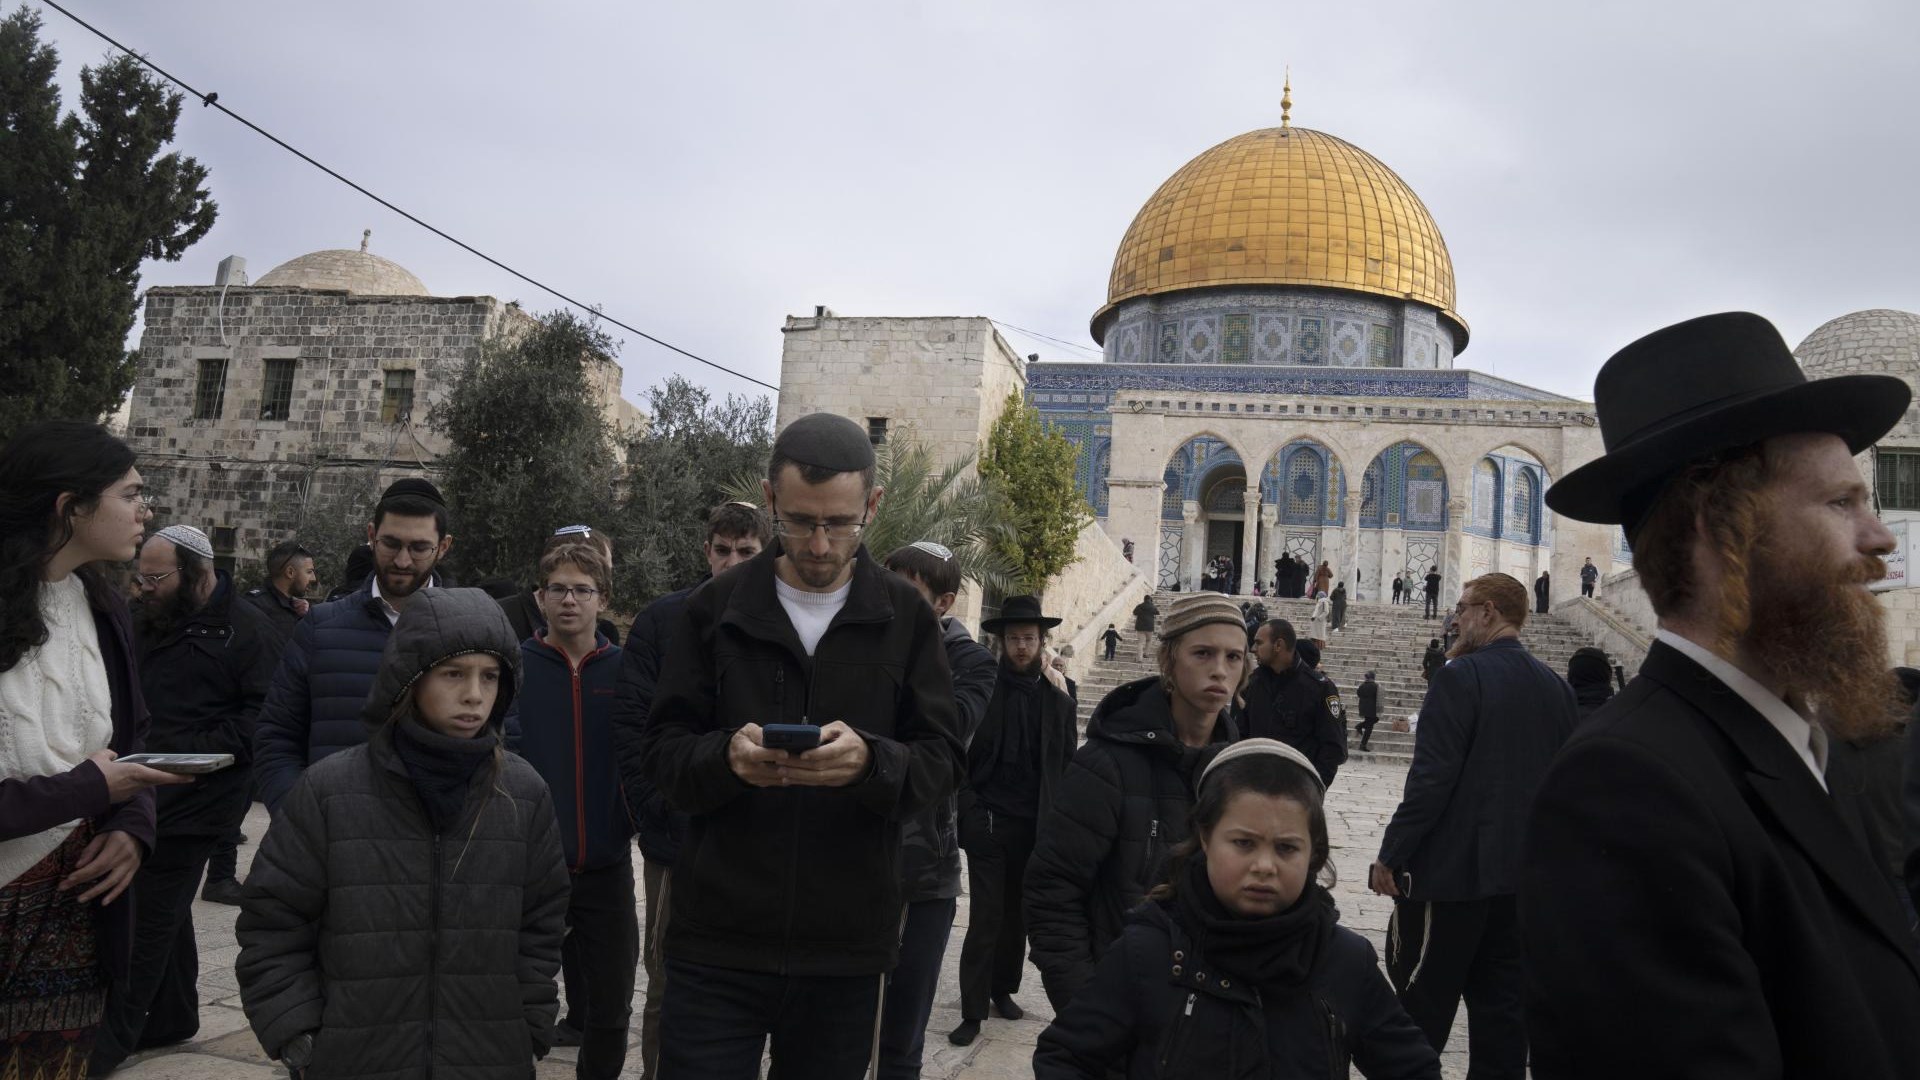 Le ministre extrémiste israélien Ben-Gvir a visité la mosquée Al-Aqsa malgré les avertissements